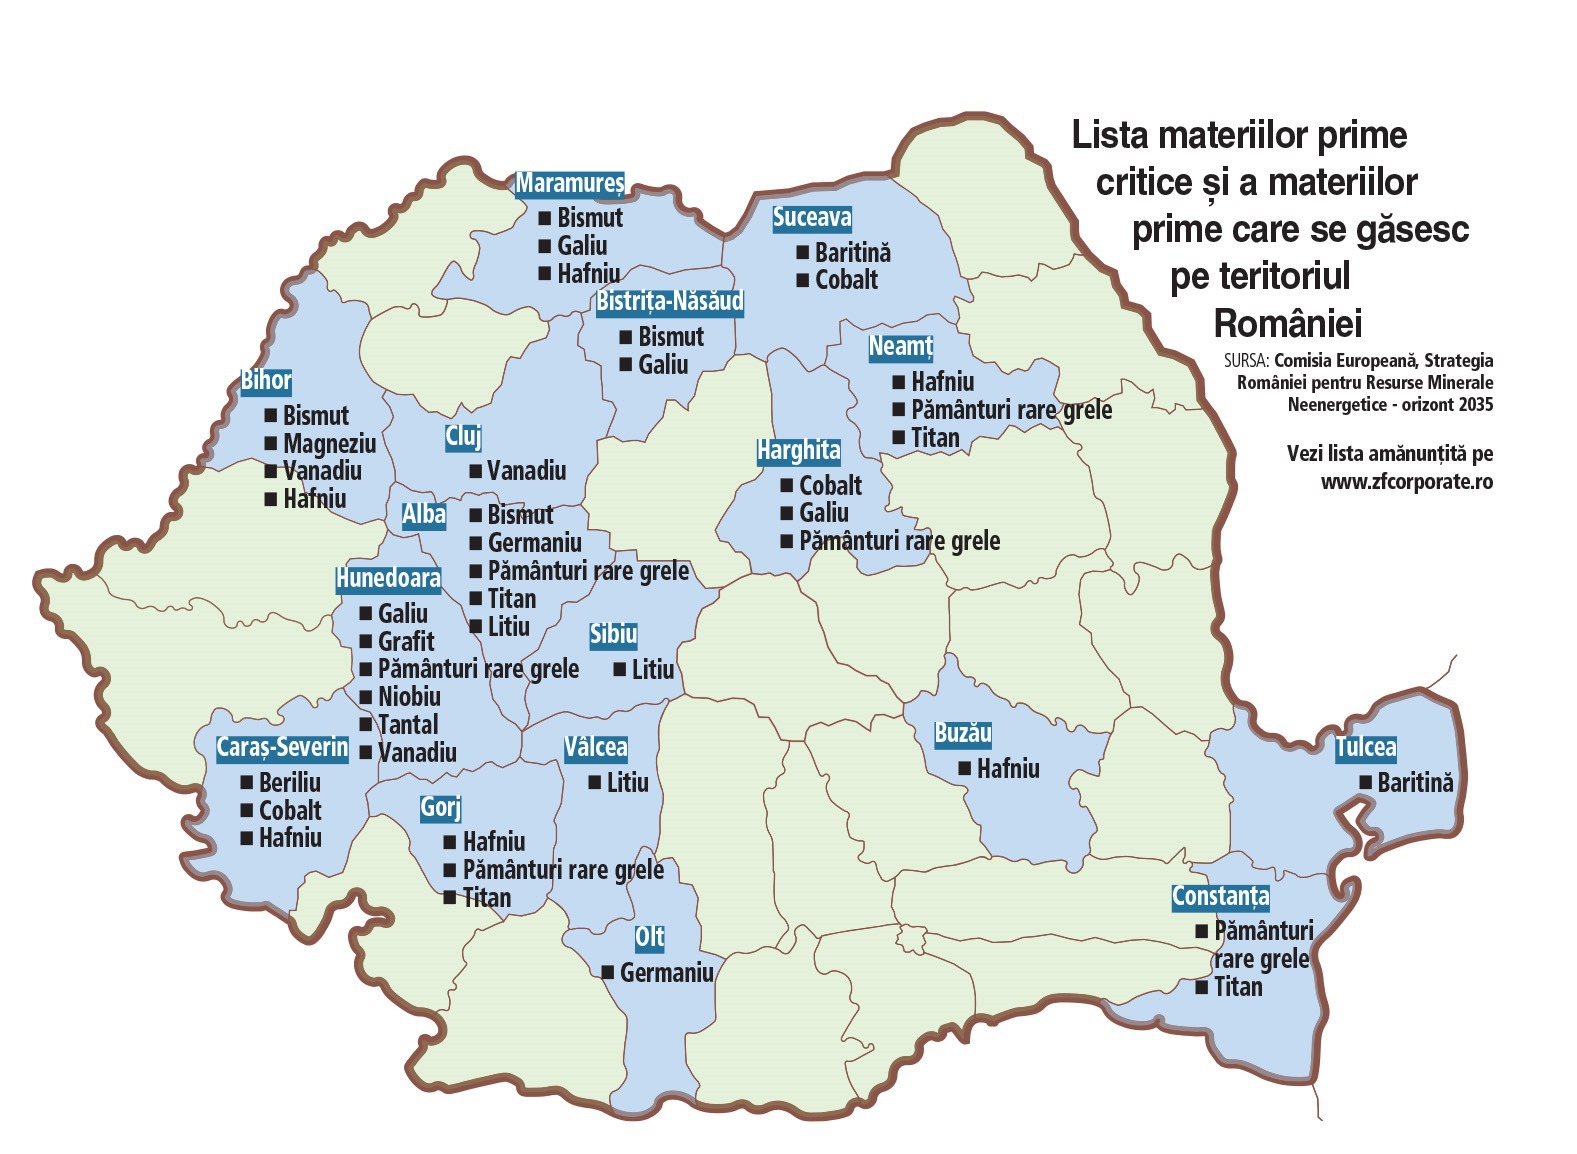 Cea mai râvnită hartă a României: În Bihor sunt rezerve moderate de magneziu, iar în Munţii Parâng se află rezerve de grafit. Ce alte materii prime critice, esenţiale pentru tranziţia energetică, mai ascund adâncurile României?